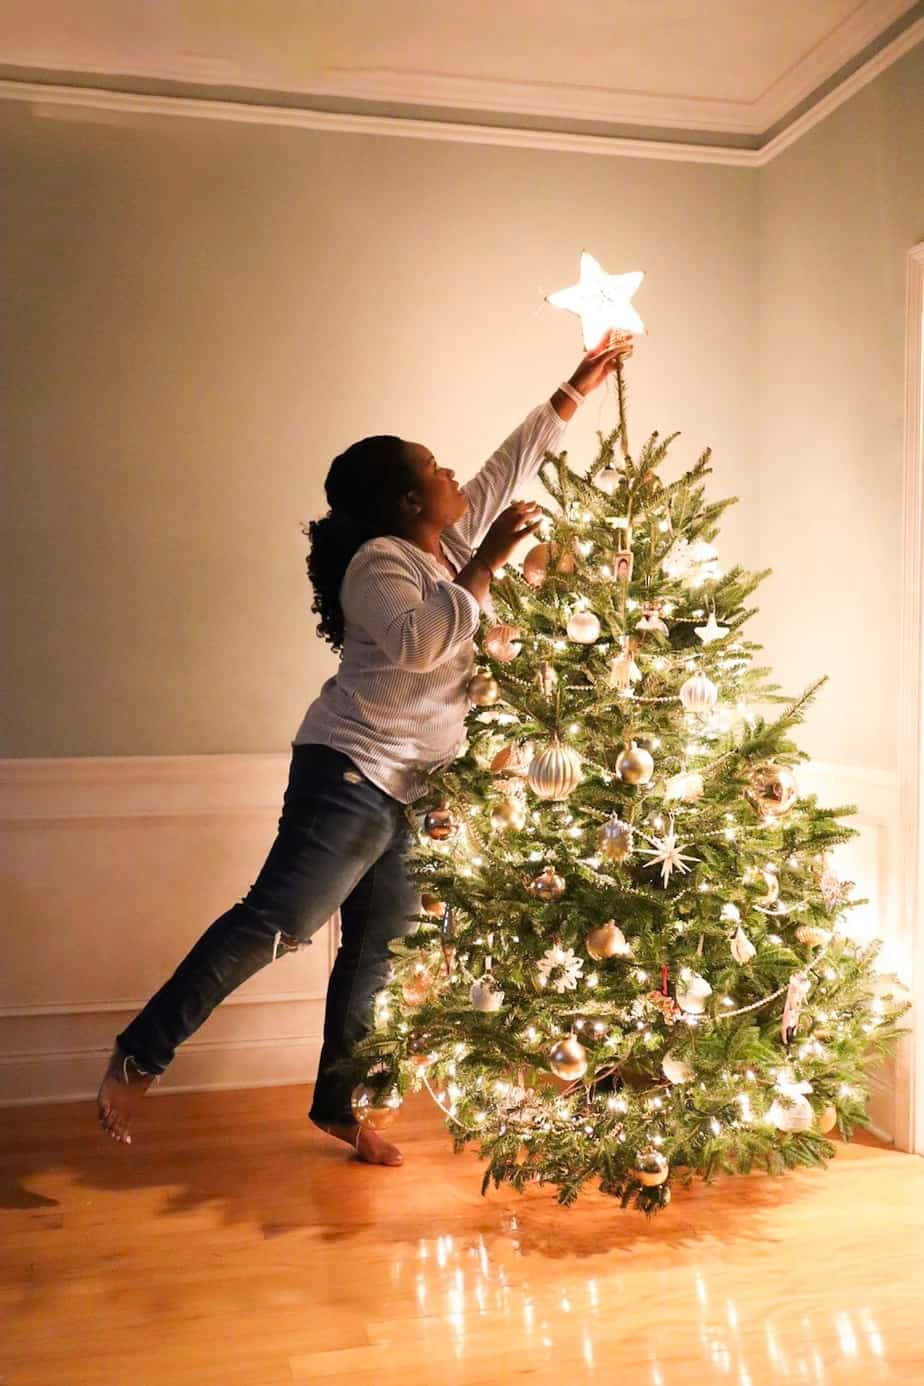 Unadonna Sta Mettendo Una Stella Sull'albero Di Natale.